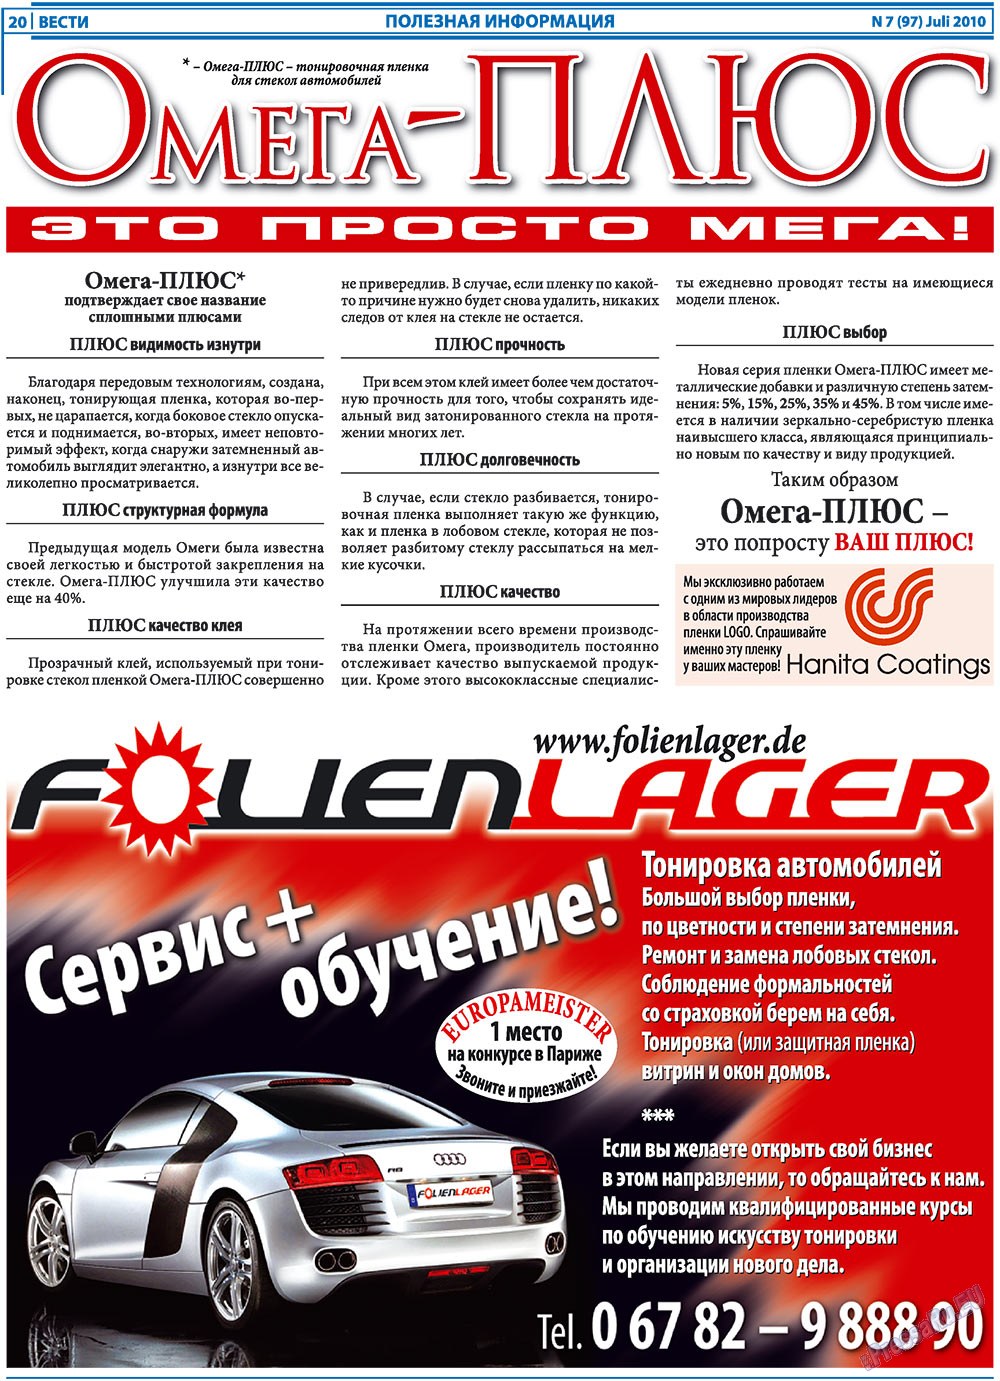 Вести, газета. 2010 №7 стр.20